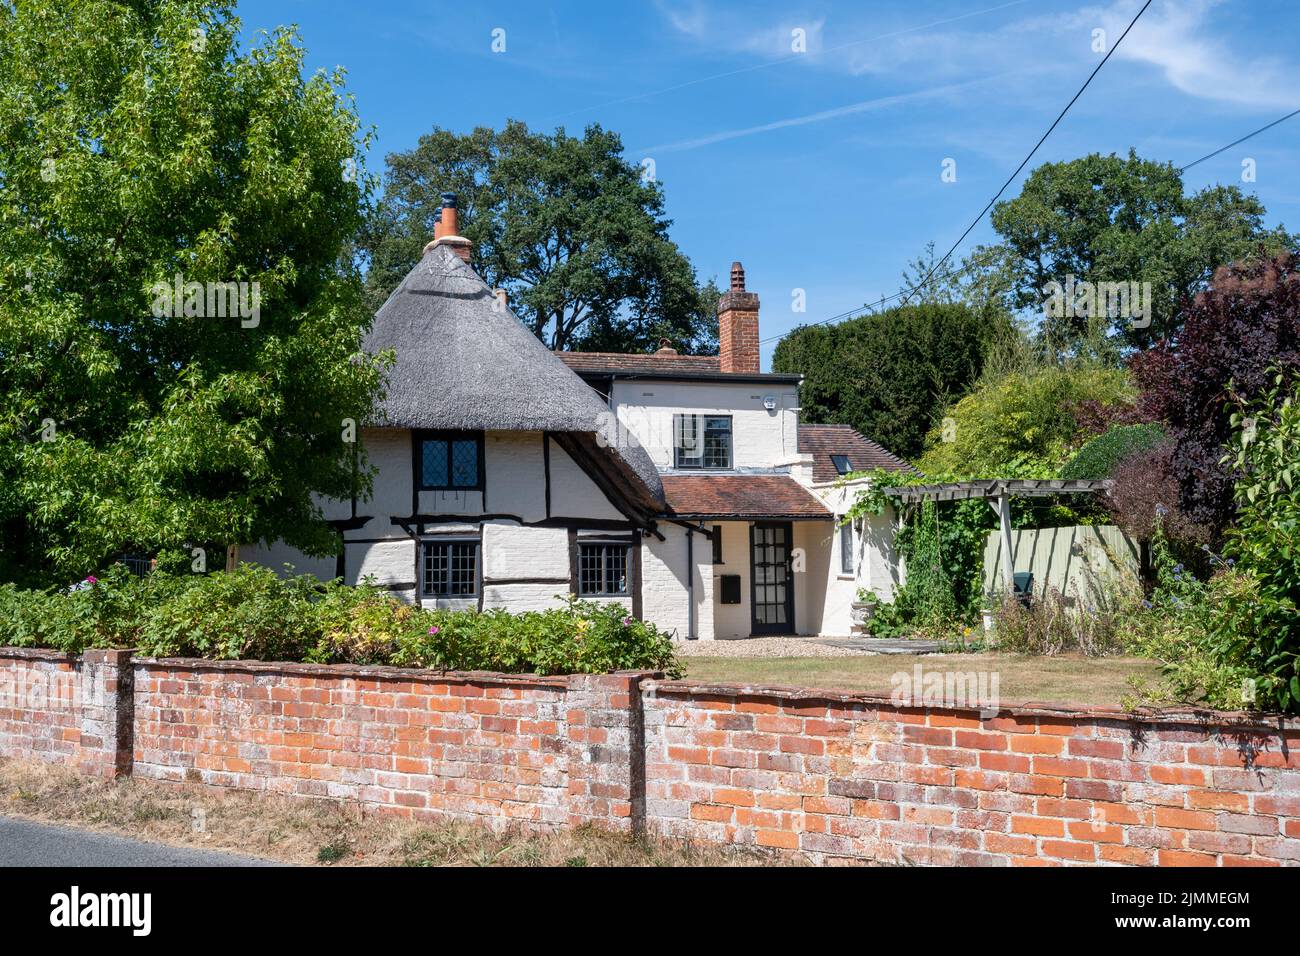 Village de Mattingley, Hampshire, Angleterre, Royaume-Uni, un chalet de chaume pendant l'été Banque D'Images